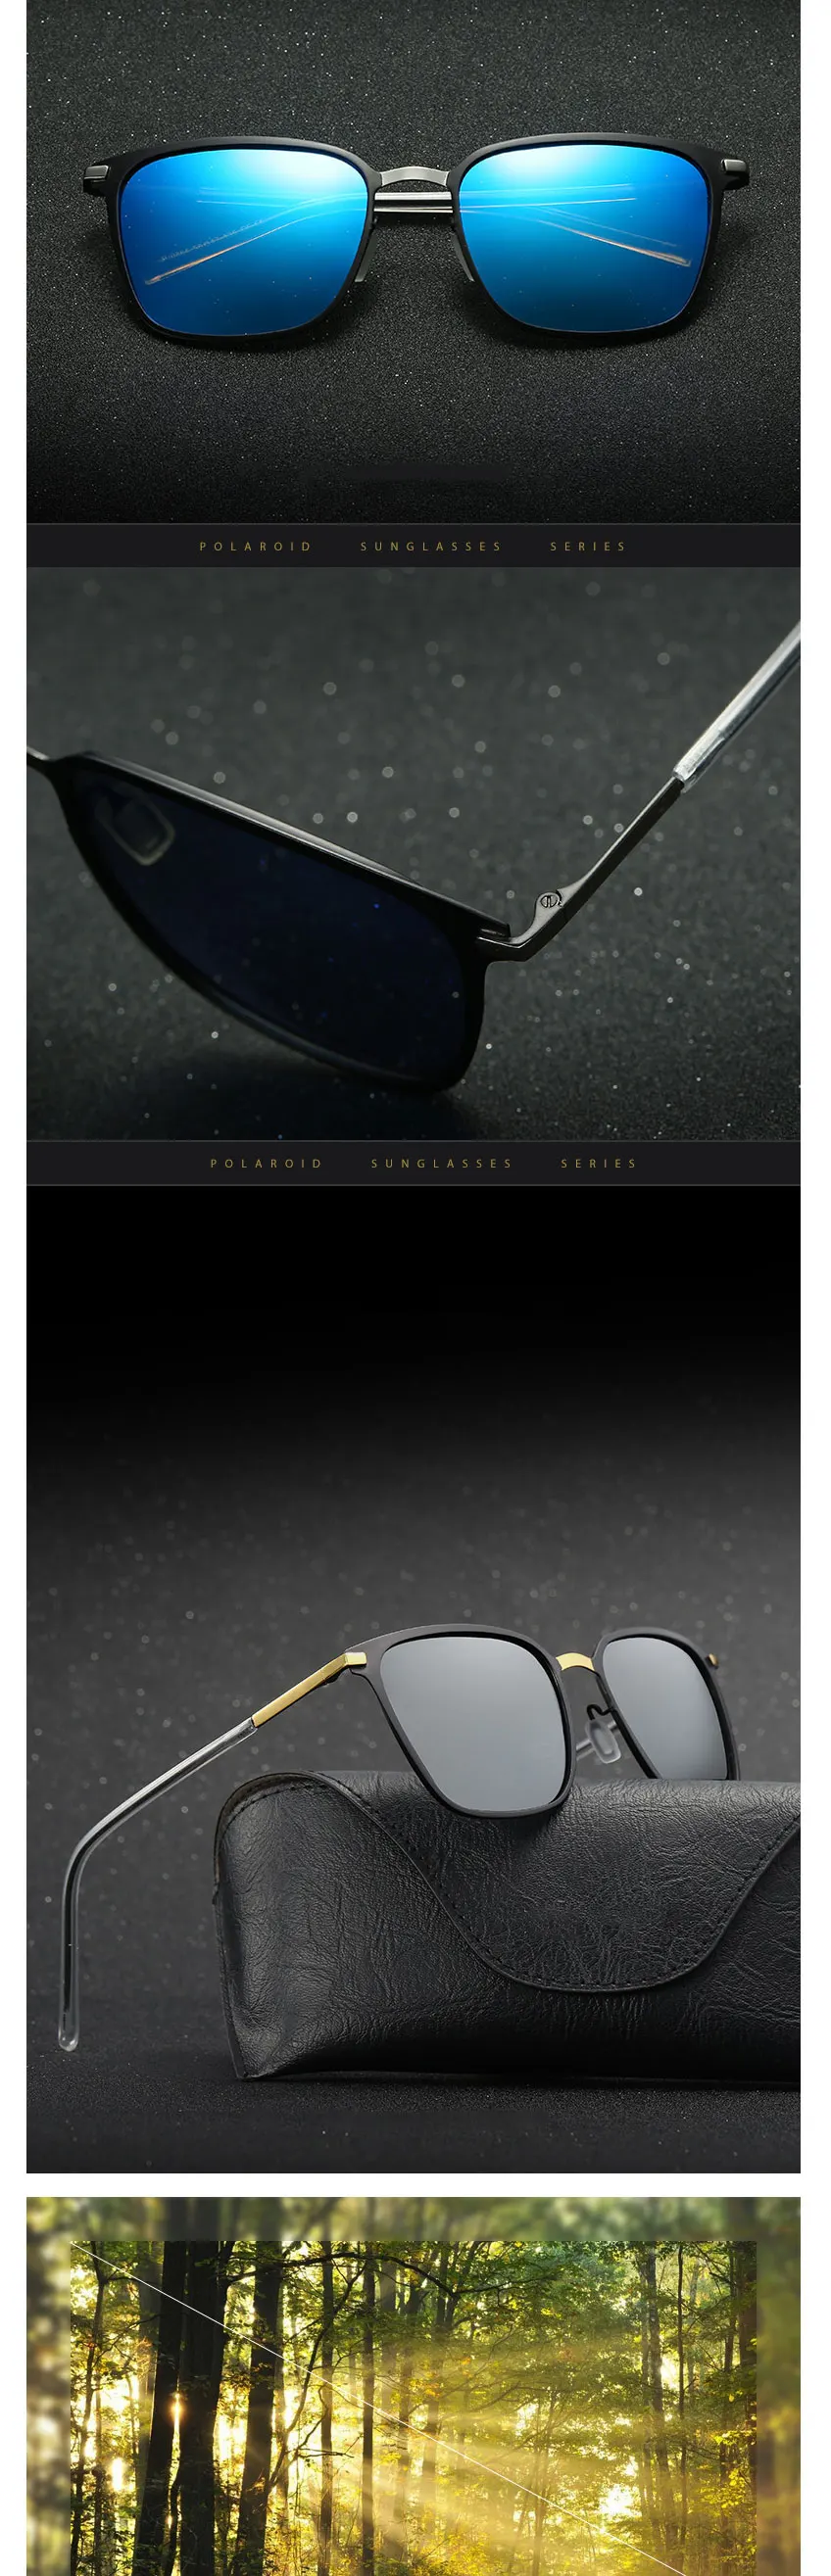 SIMPRECT, солнцезащитные очки, мужские, поляризационные, для вождения, квадратные, солнцезащитные очки, UV400, высокое качество, фирменный дизайн, Ретро стиль, Lunette Soleil Homme